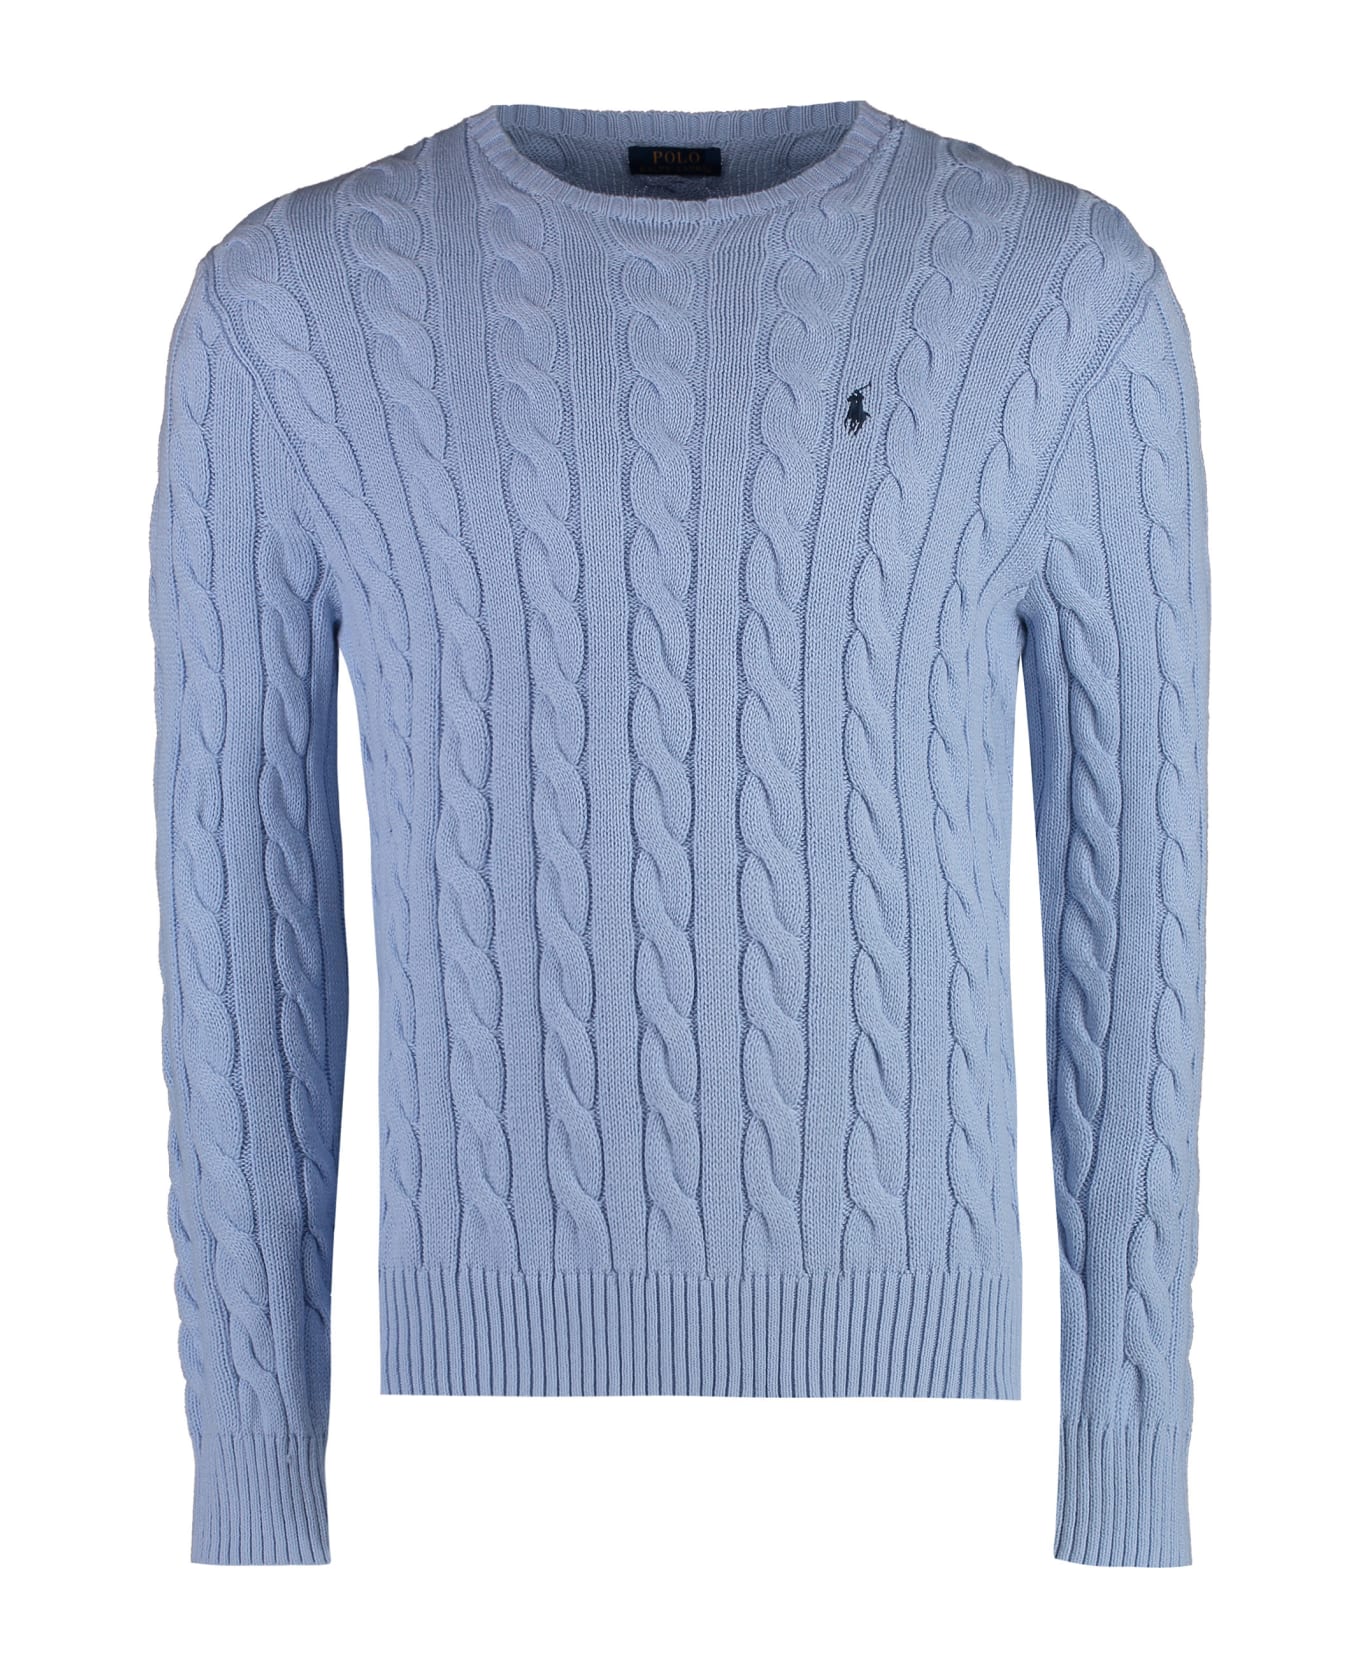 Polo Ralph Lauren Crew-neck Wool Sweater - Light Blue